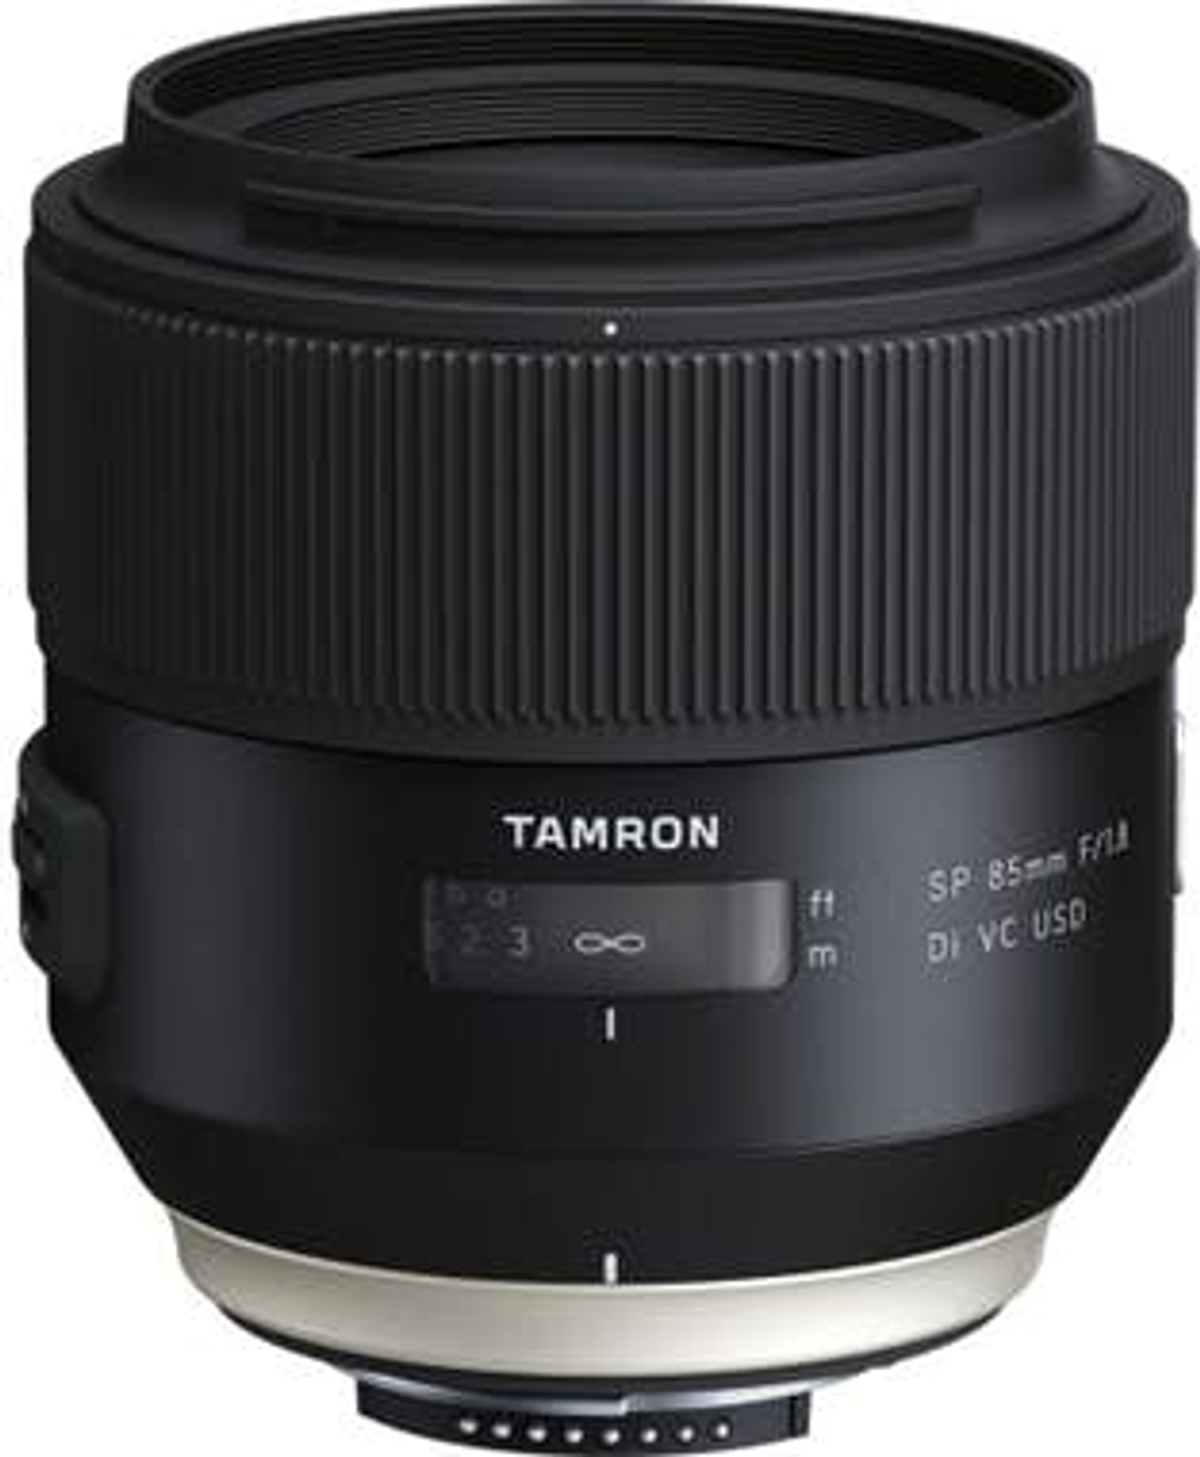 TAMRON F016N SP F/1.8 DI VC NIKON USD für 85 SP mm F-Mount, - Schwarz) Di, 85MM 85 f/1.8 (Objektiv mm Nikon VC, USD